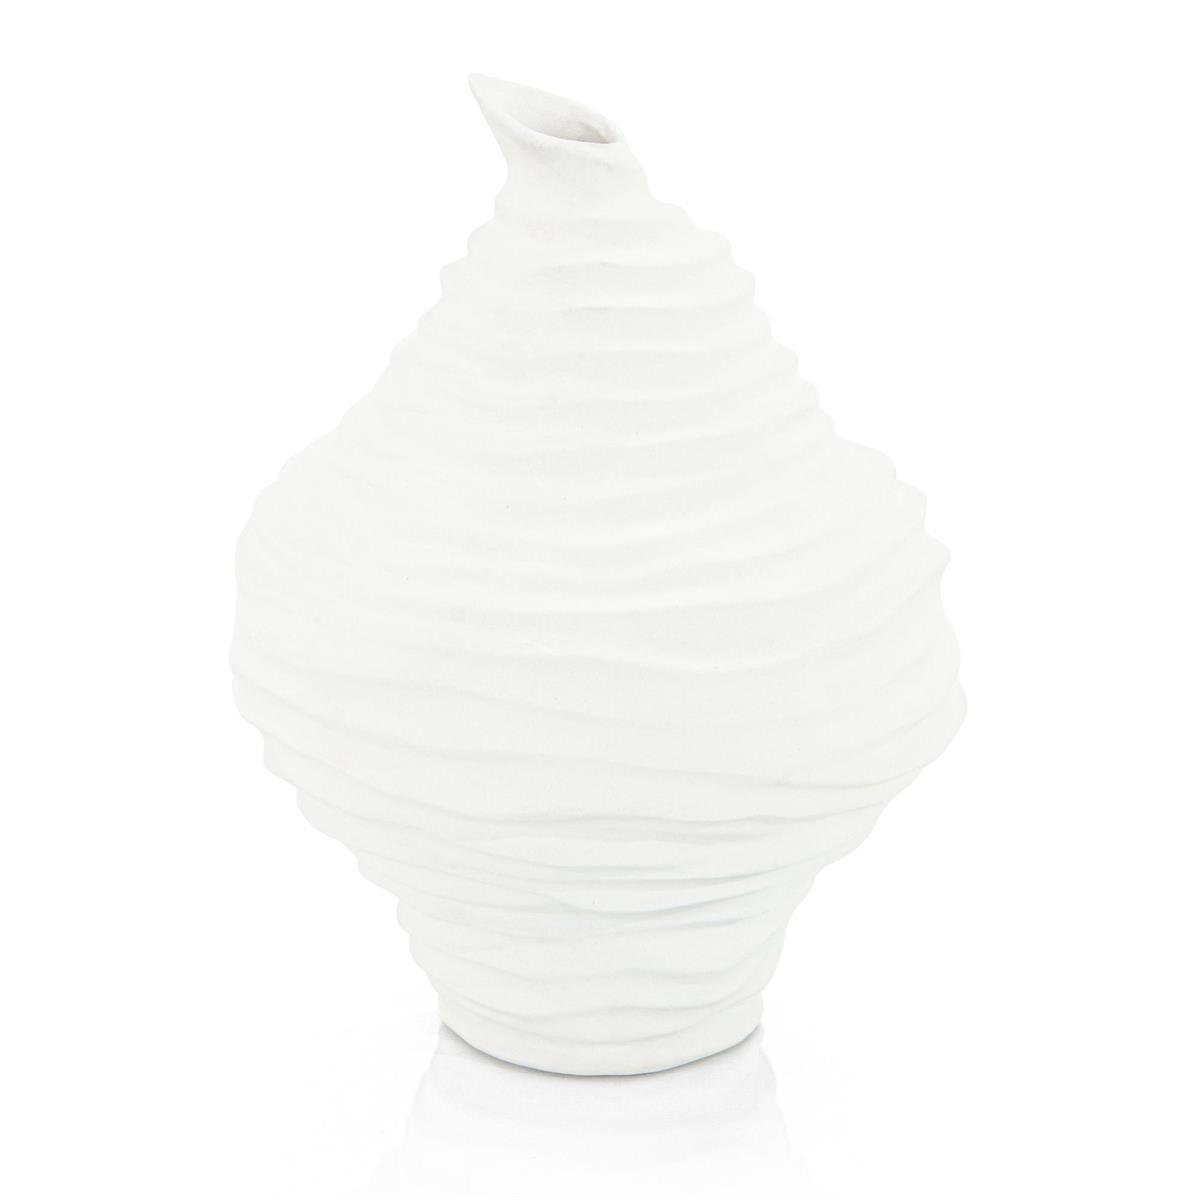 Jasmine White Porcelain Vase-John Richard-Vases-Artistic Elements